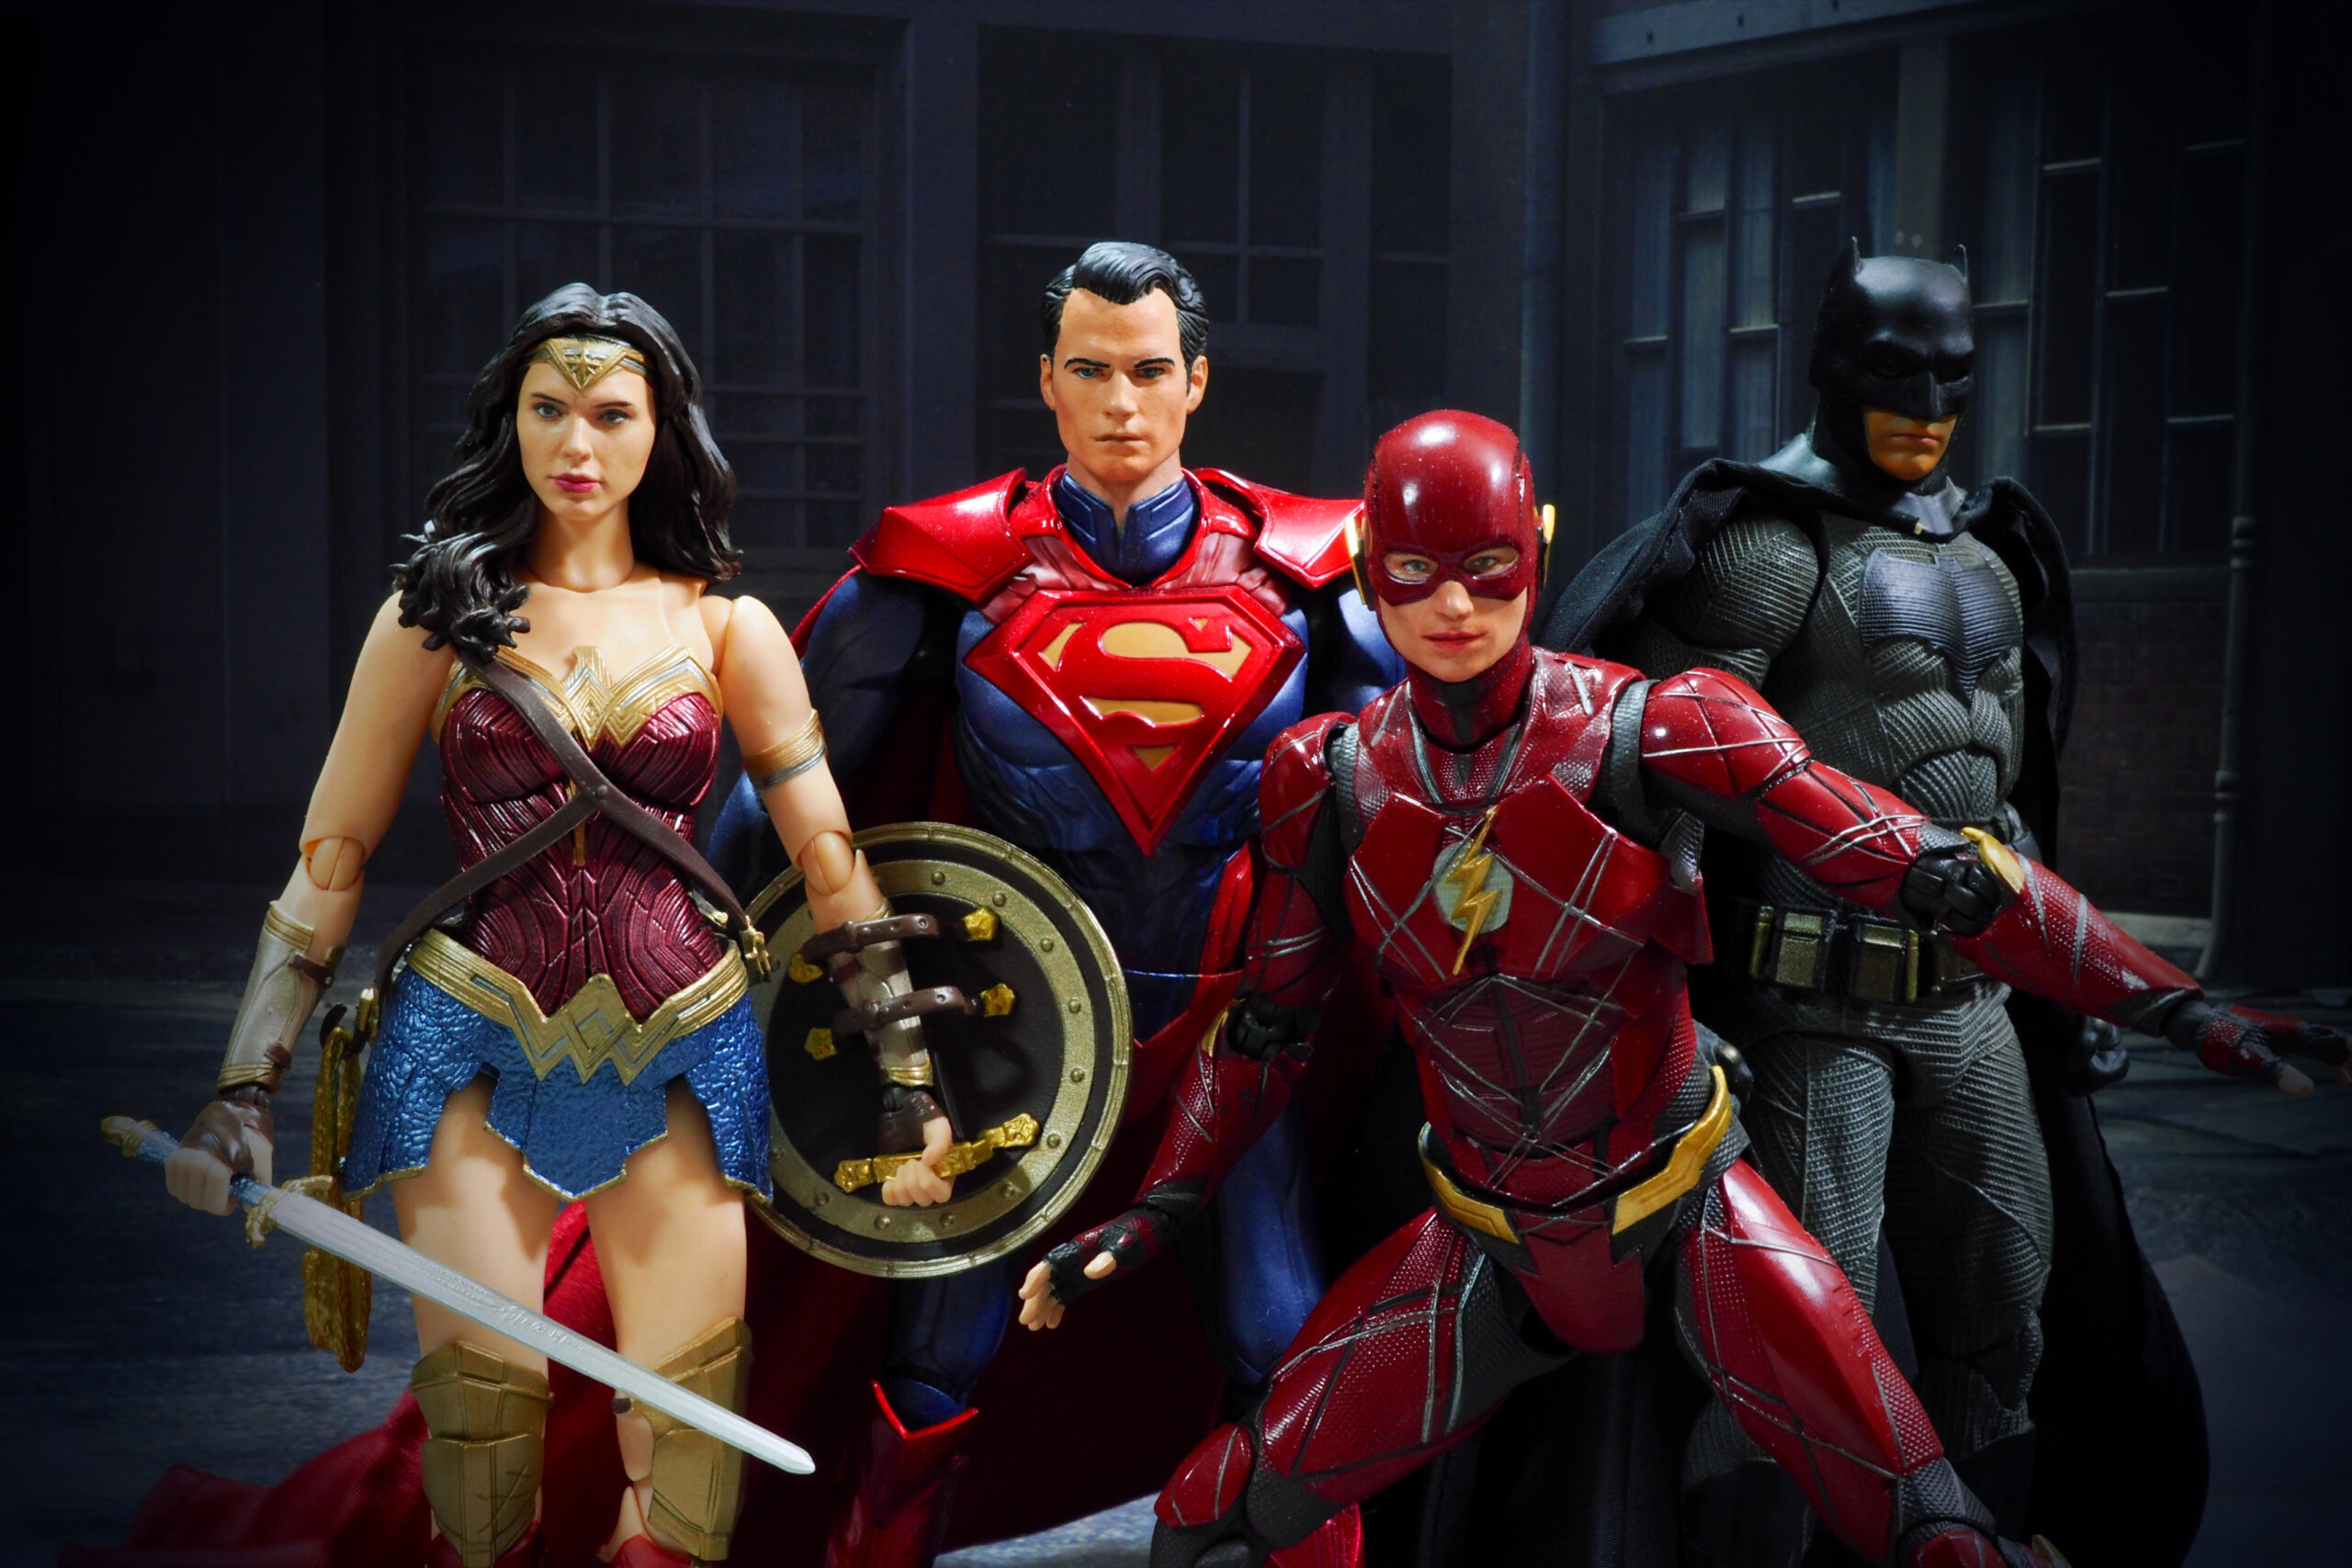 Heróis da DC: curiosidades dos personagens da Liga da Justiça